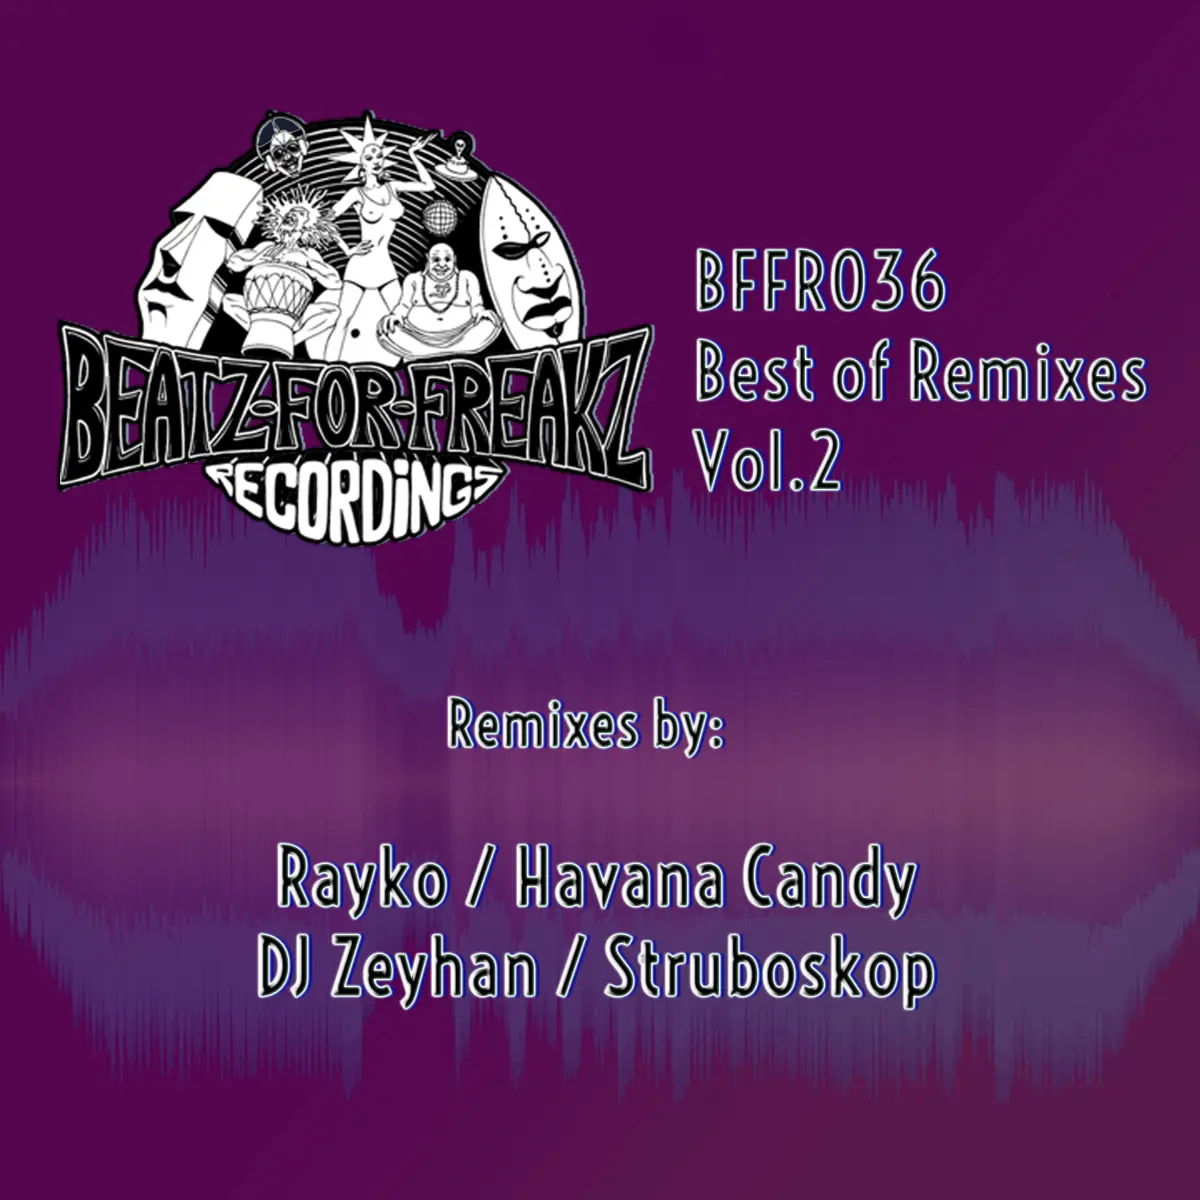 BFFR036 - Various Artists - Best of Remixes Vol. 2